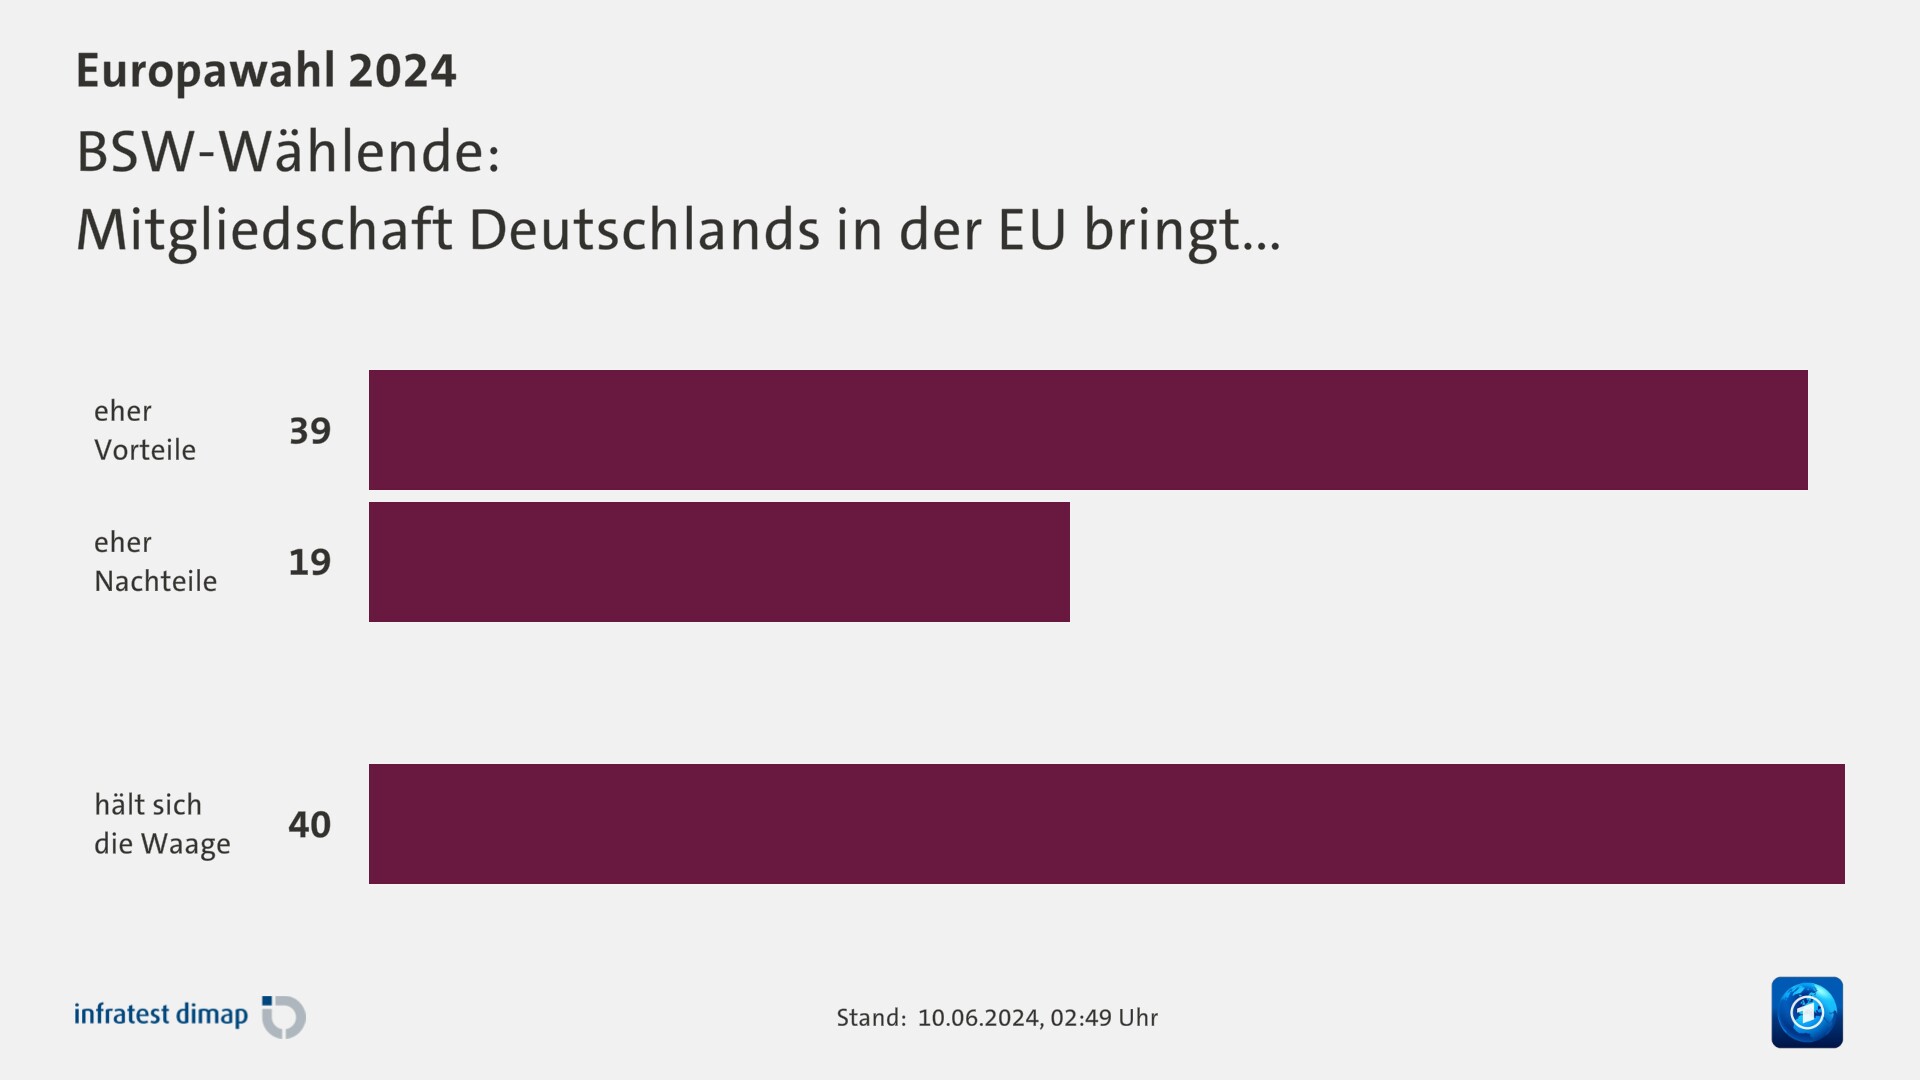 BSW-Wählende:|Mitgliedschaft Deutschlands in der EU bringt...